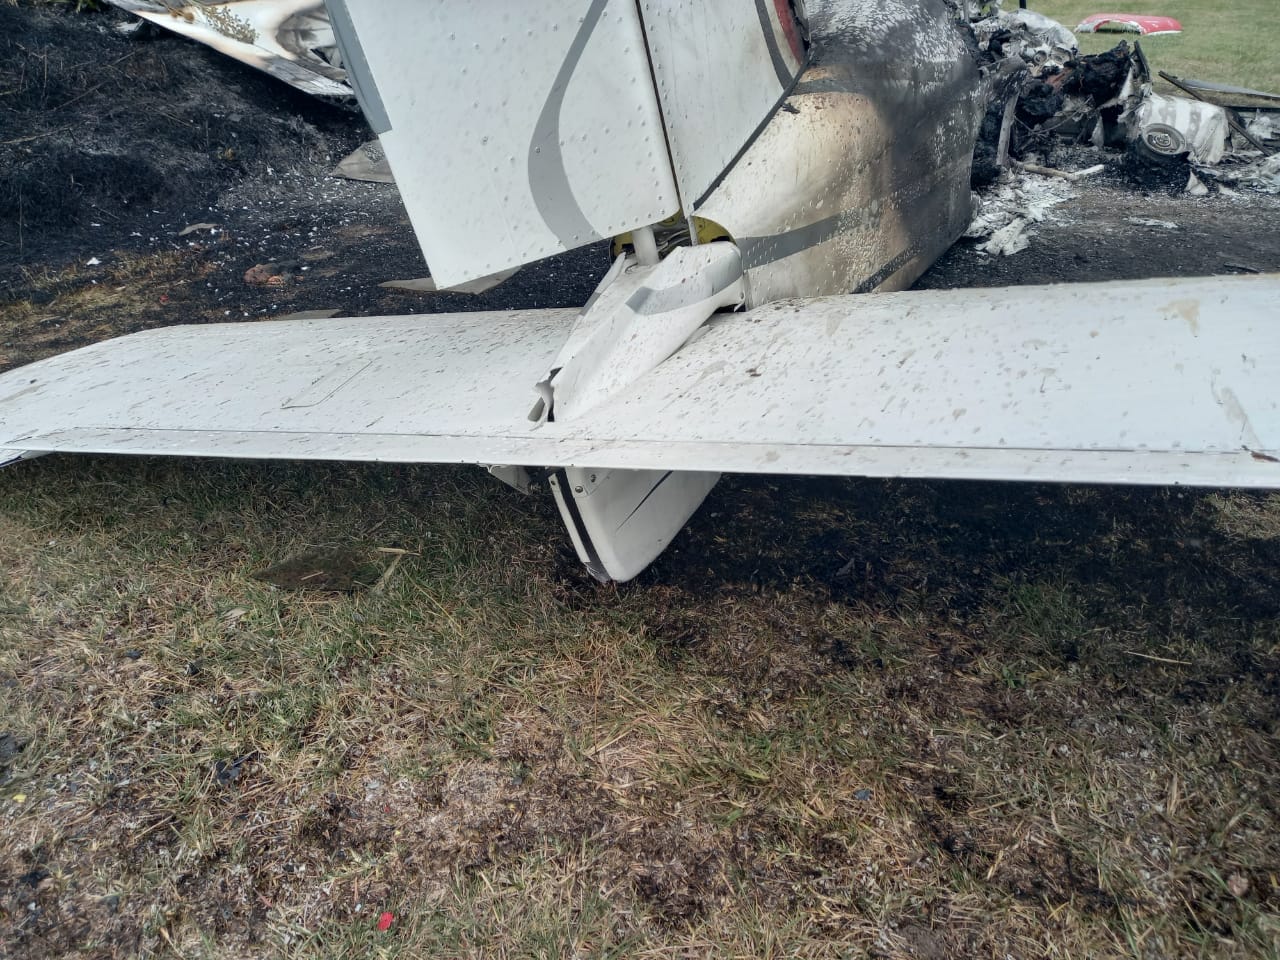 Cayó avioneta experimental en cercanías del Aeroclub de General Rodríguez y hay dos muertos